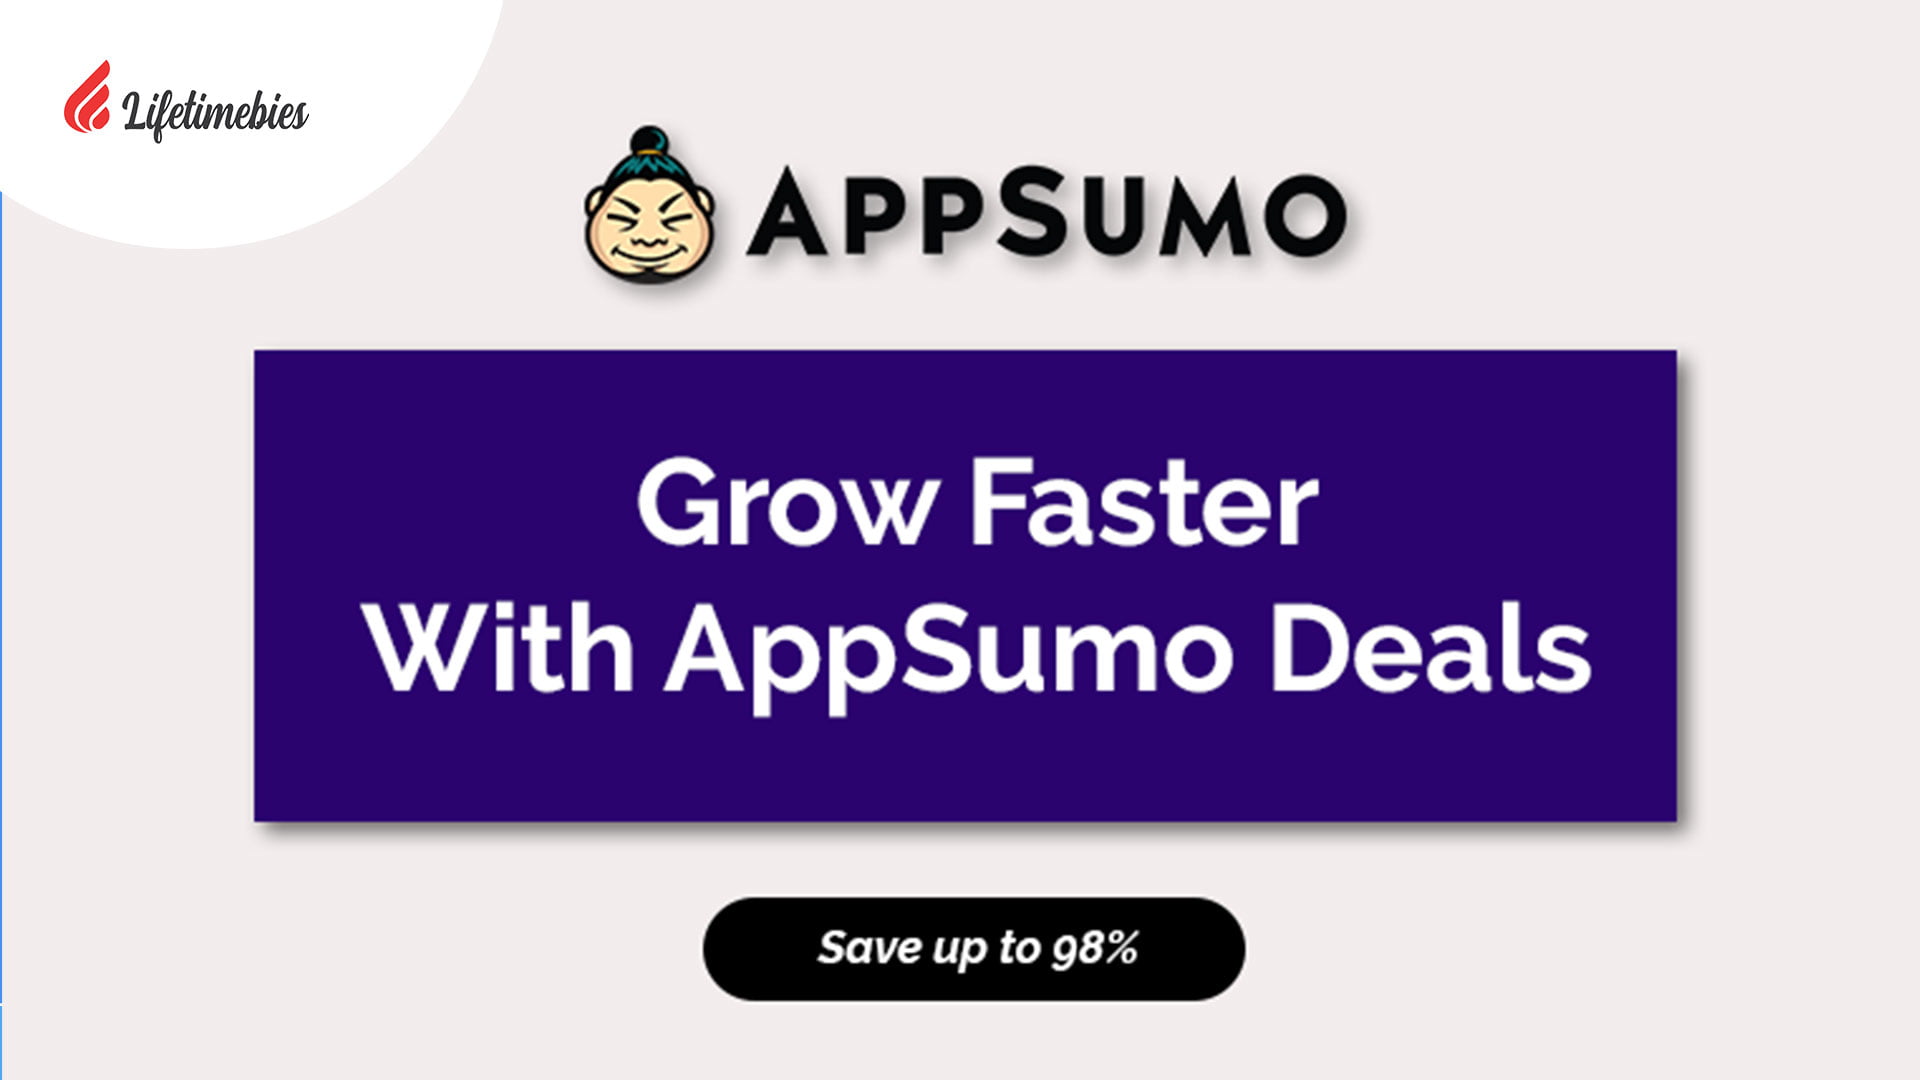 AppSumo-Lifetime-Deals